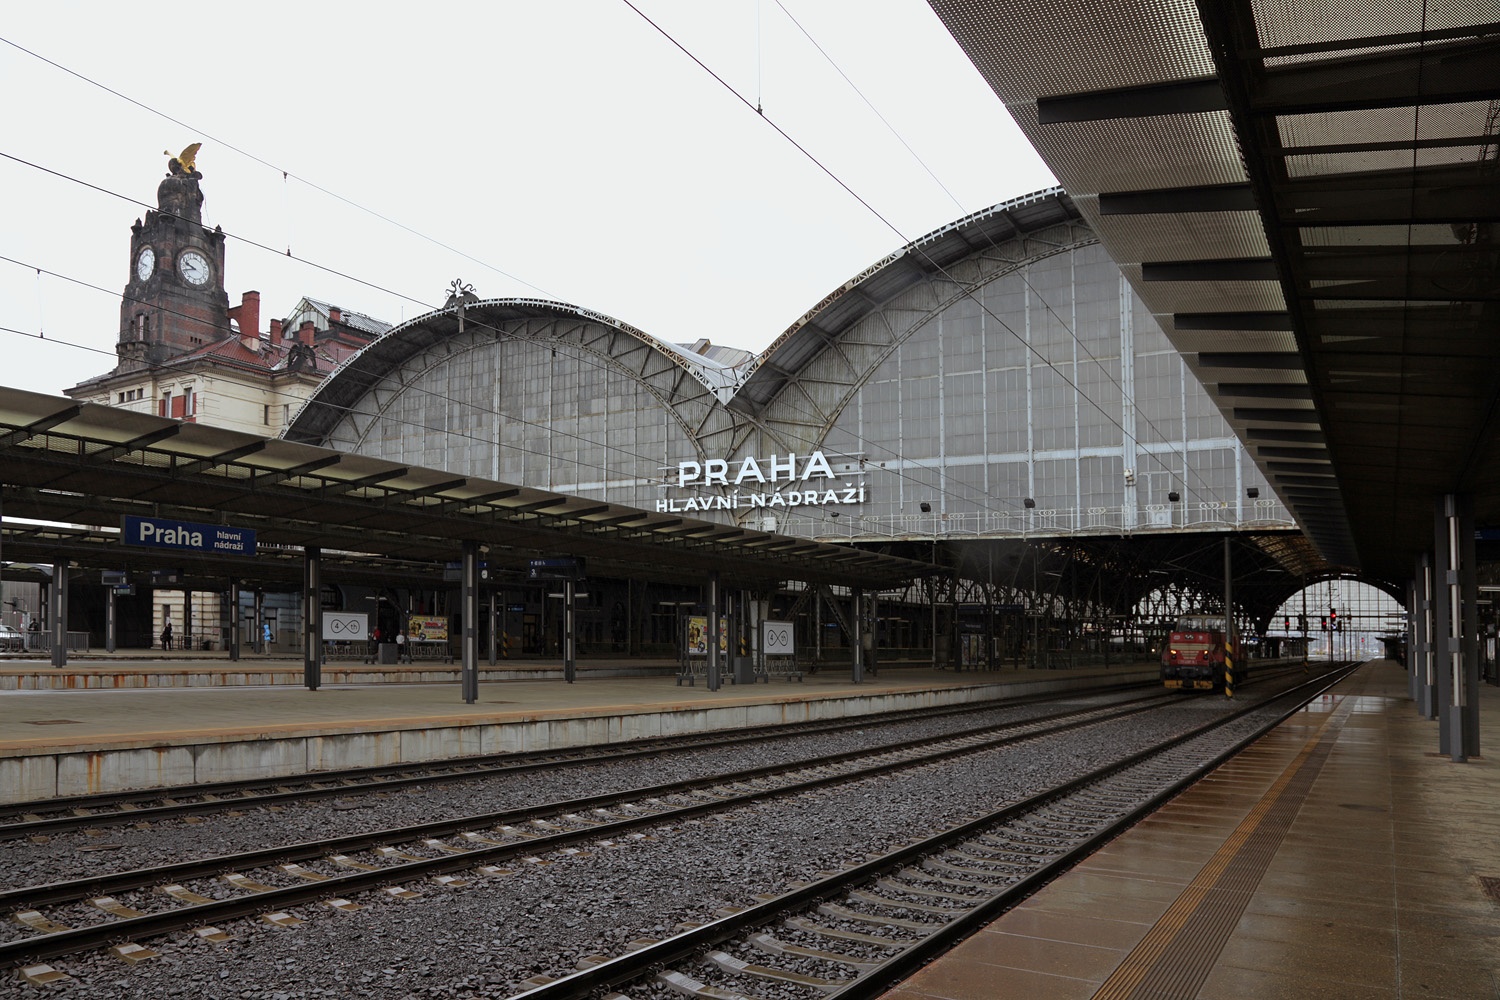 bill-hocker-train-station-prague-czech-republic-2013